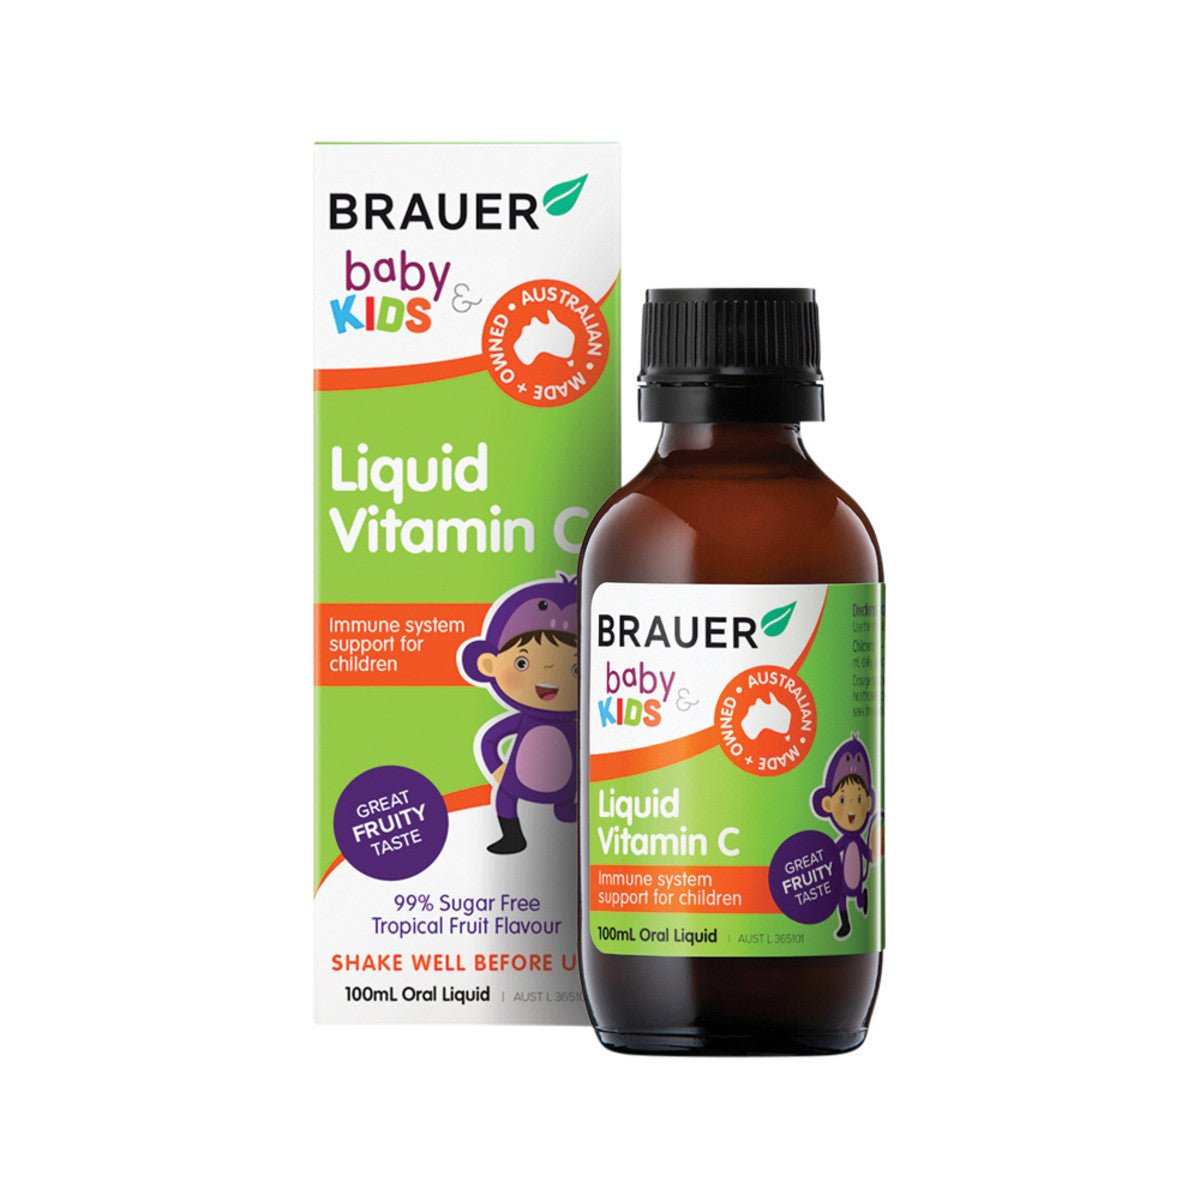 Brauer - Baby & Kids Liquid Vitamin C (1+ years)